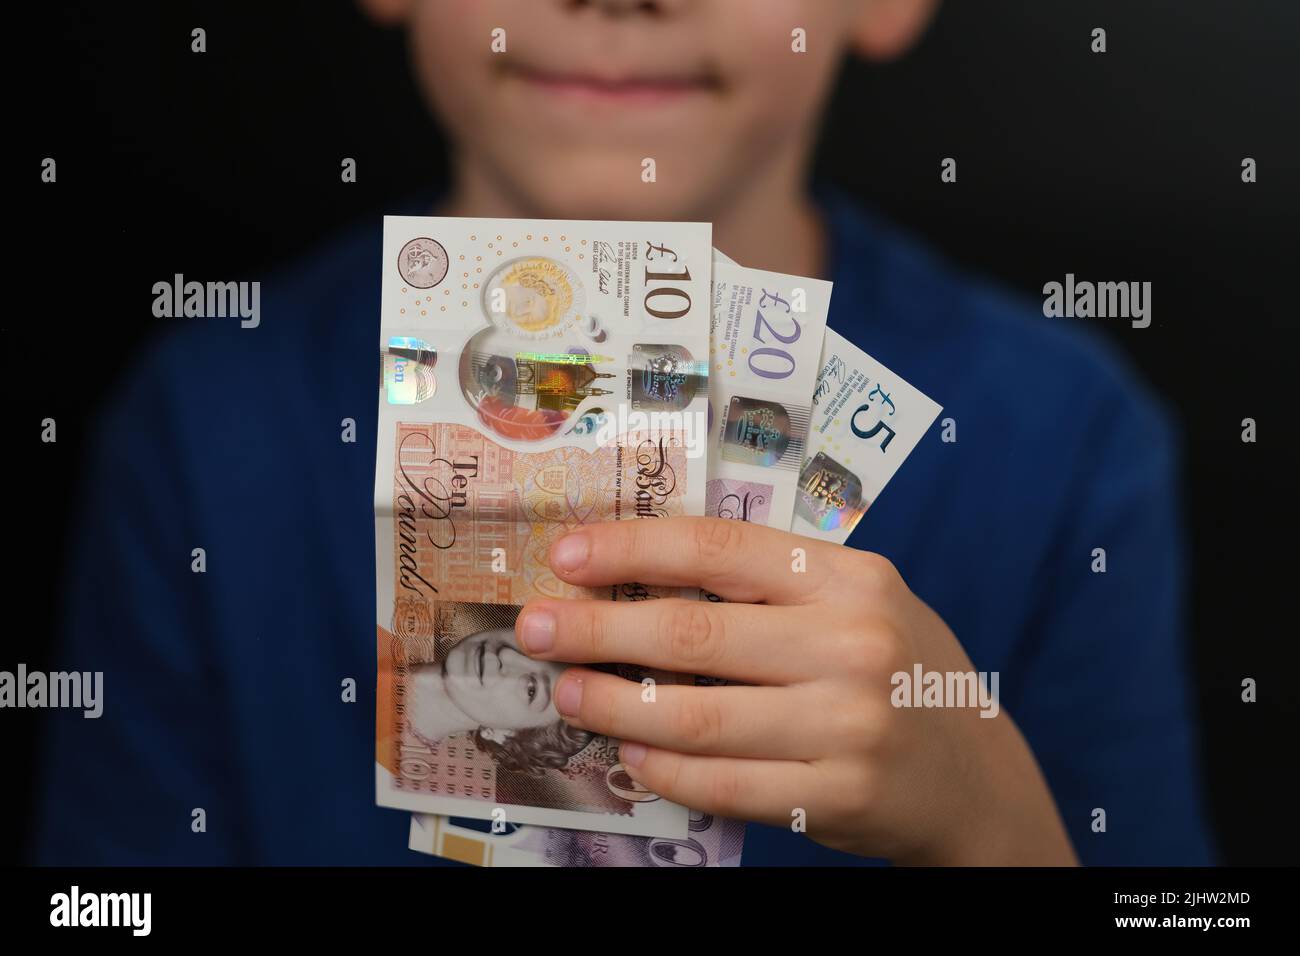 Libra esterlina Billetes de 10, 20, 5 libras vistos en manos de un niño feliz. Concepto de finanzas personales e hijos. Foto de stock